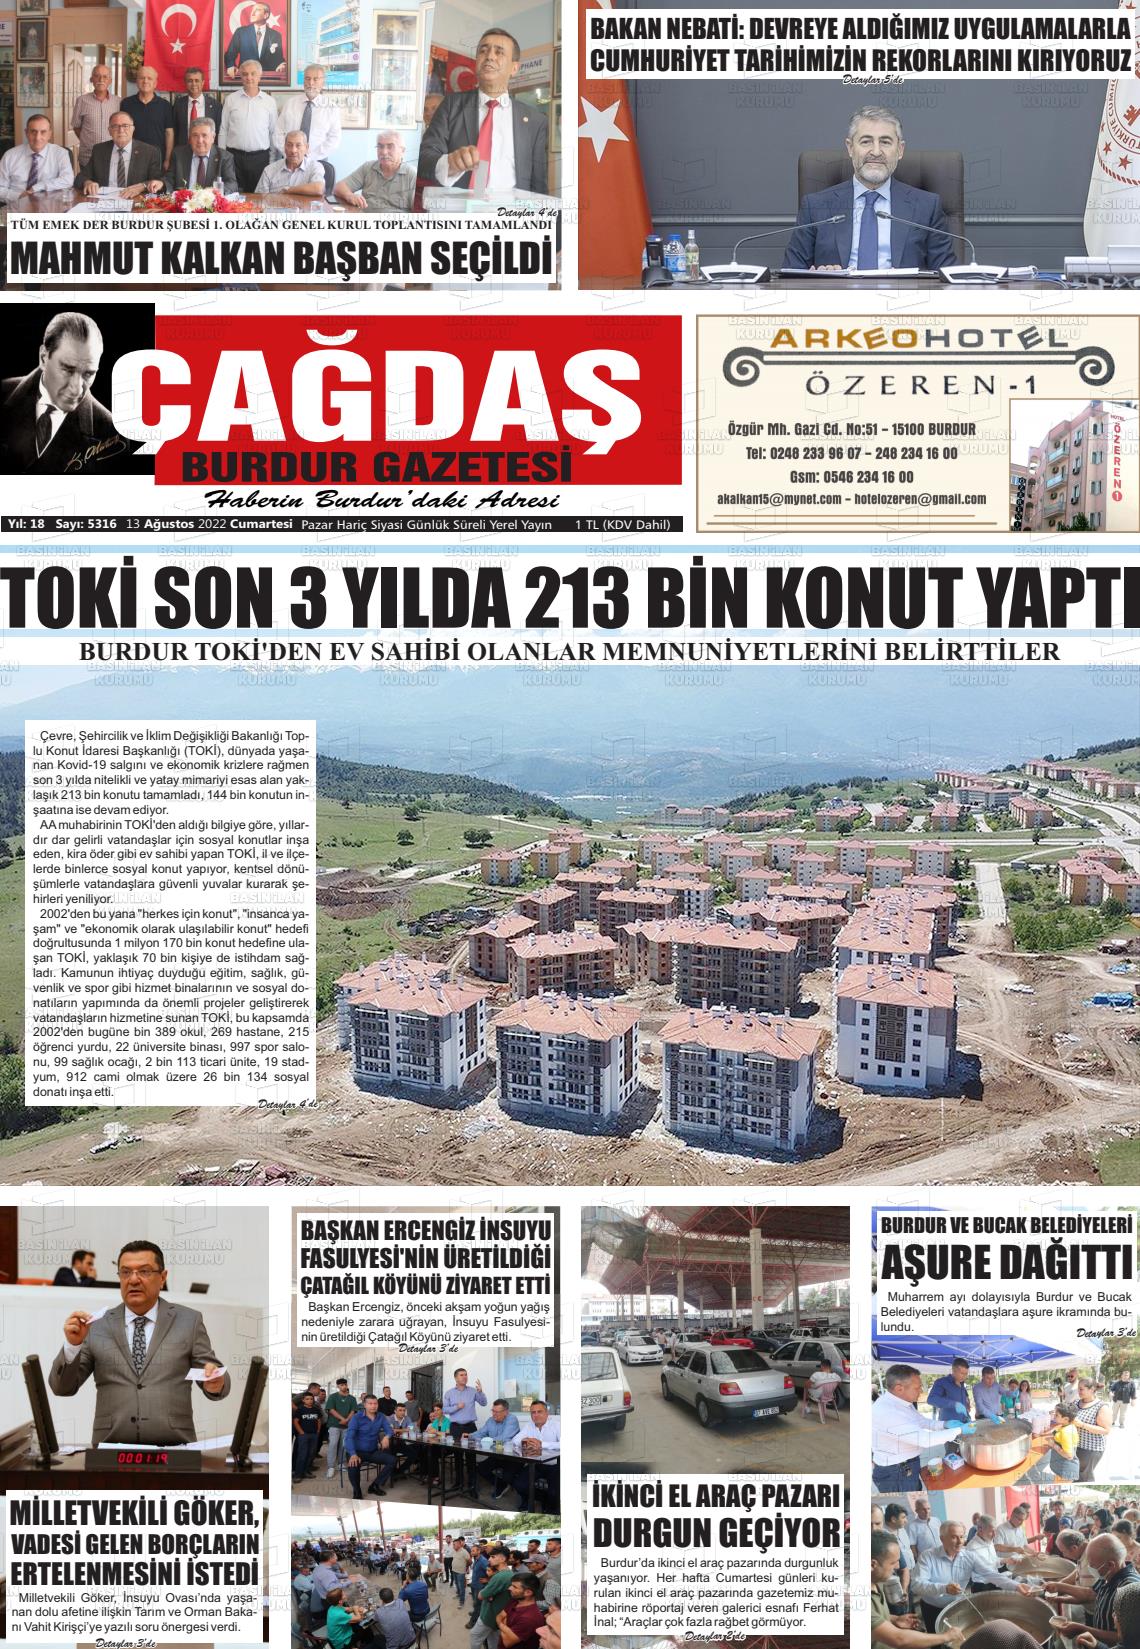 13 Ağustos 2022 Çağdaş Burdur Gazete Manşeti